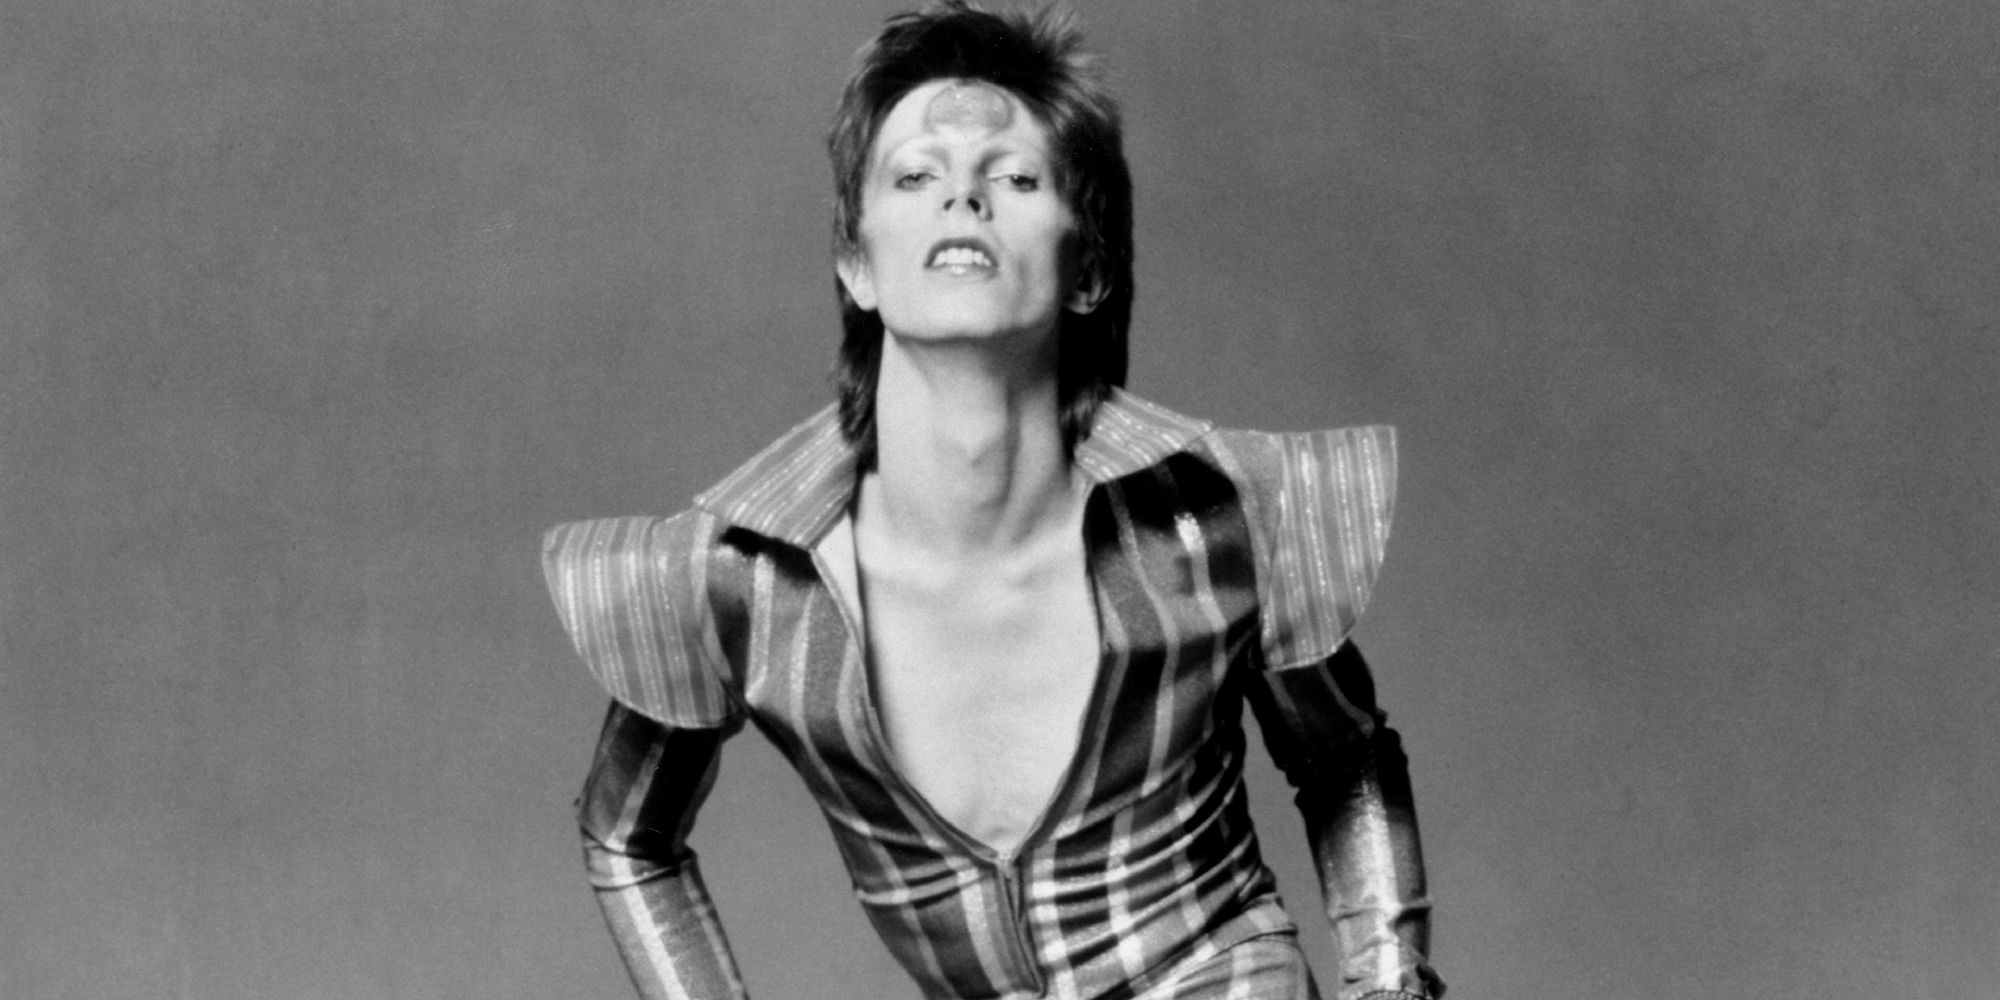 Amazon.com: C&D Visionary David Bowie Pose Patch, Black, White